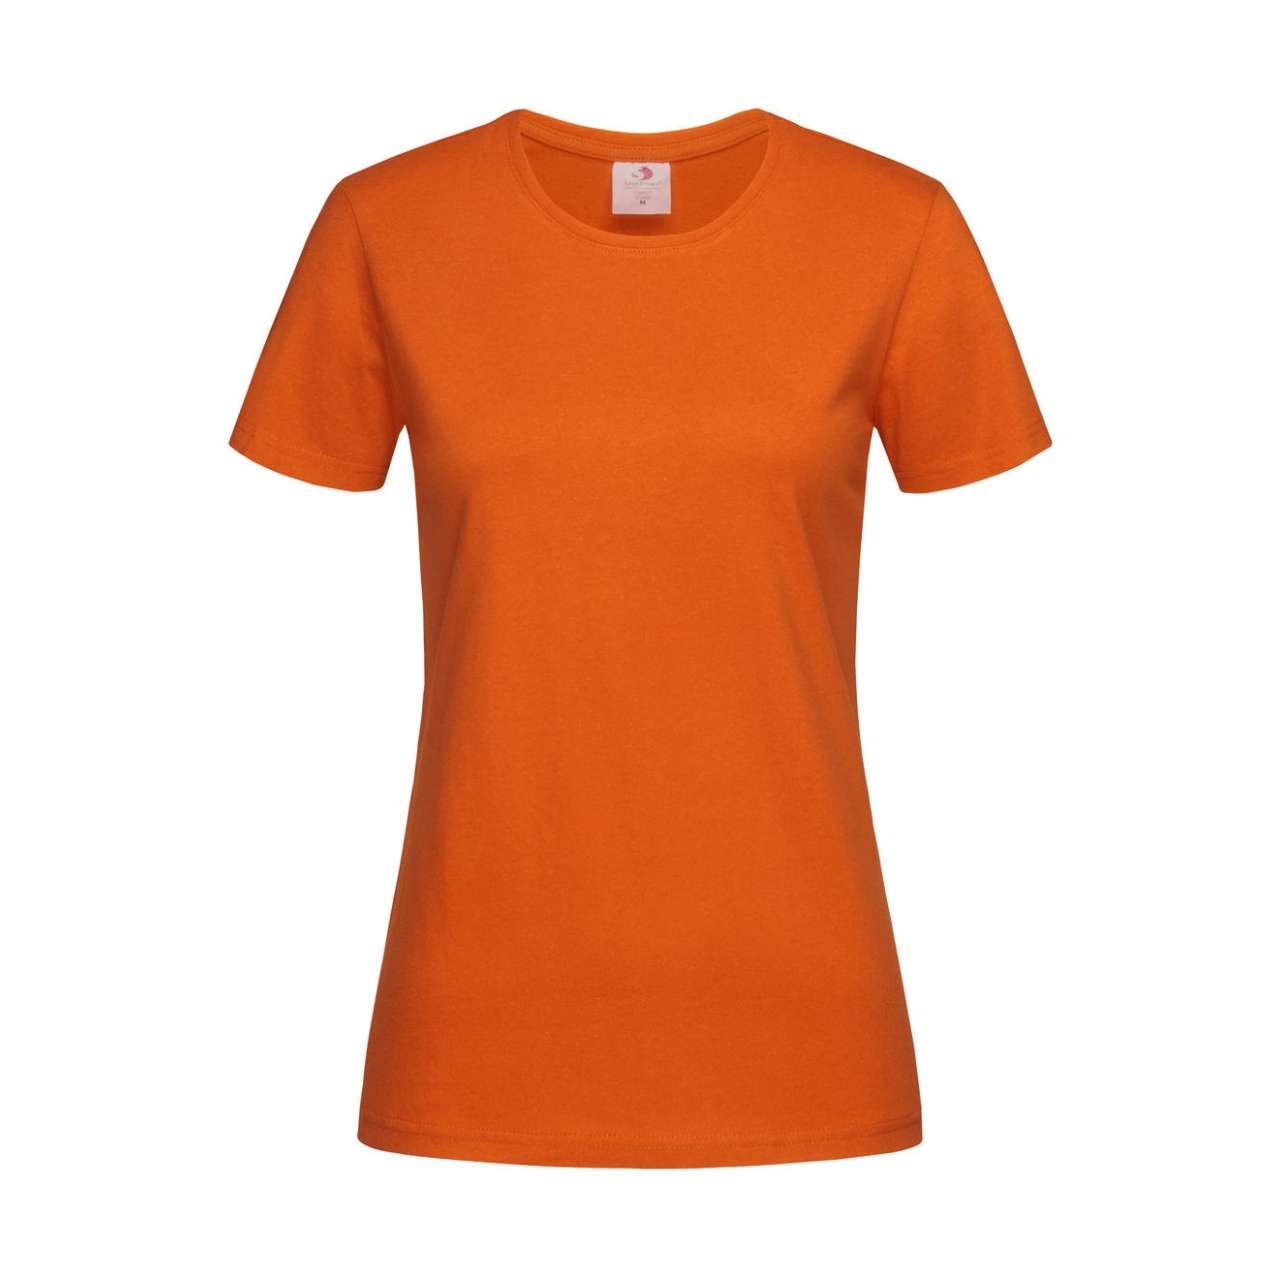 Tričko dámské Stedman Fitted s kulatým výstřihem - oranžové, L